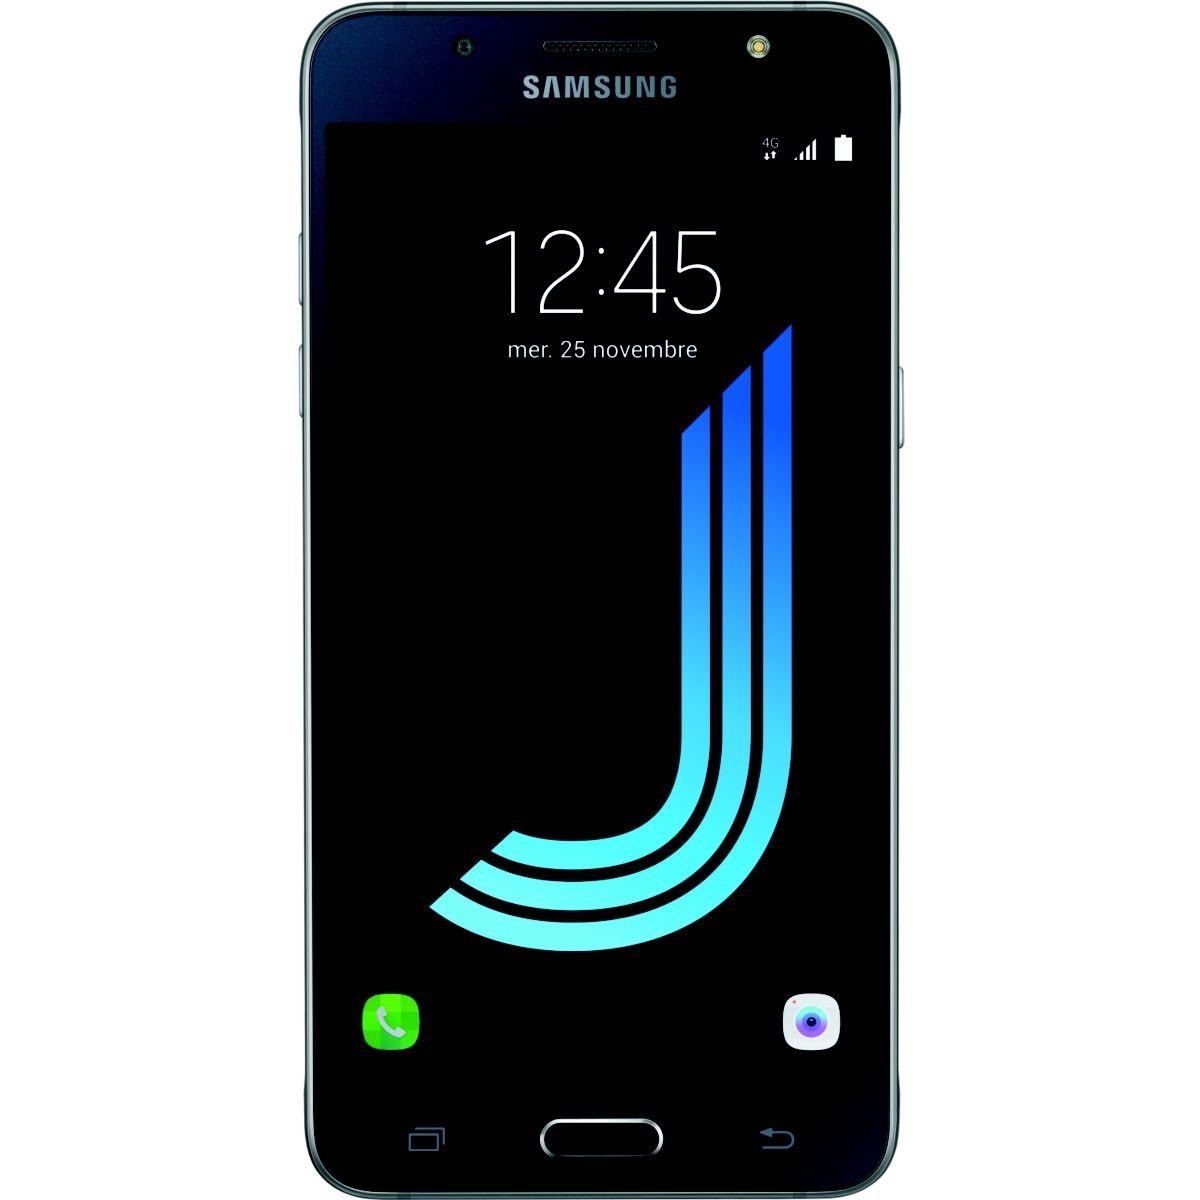 Samsung Galaxy J5 (2016) Black Edition появился во Франции